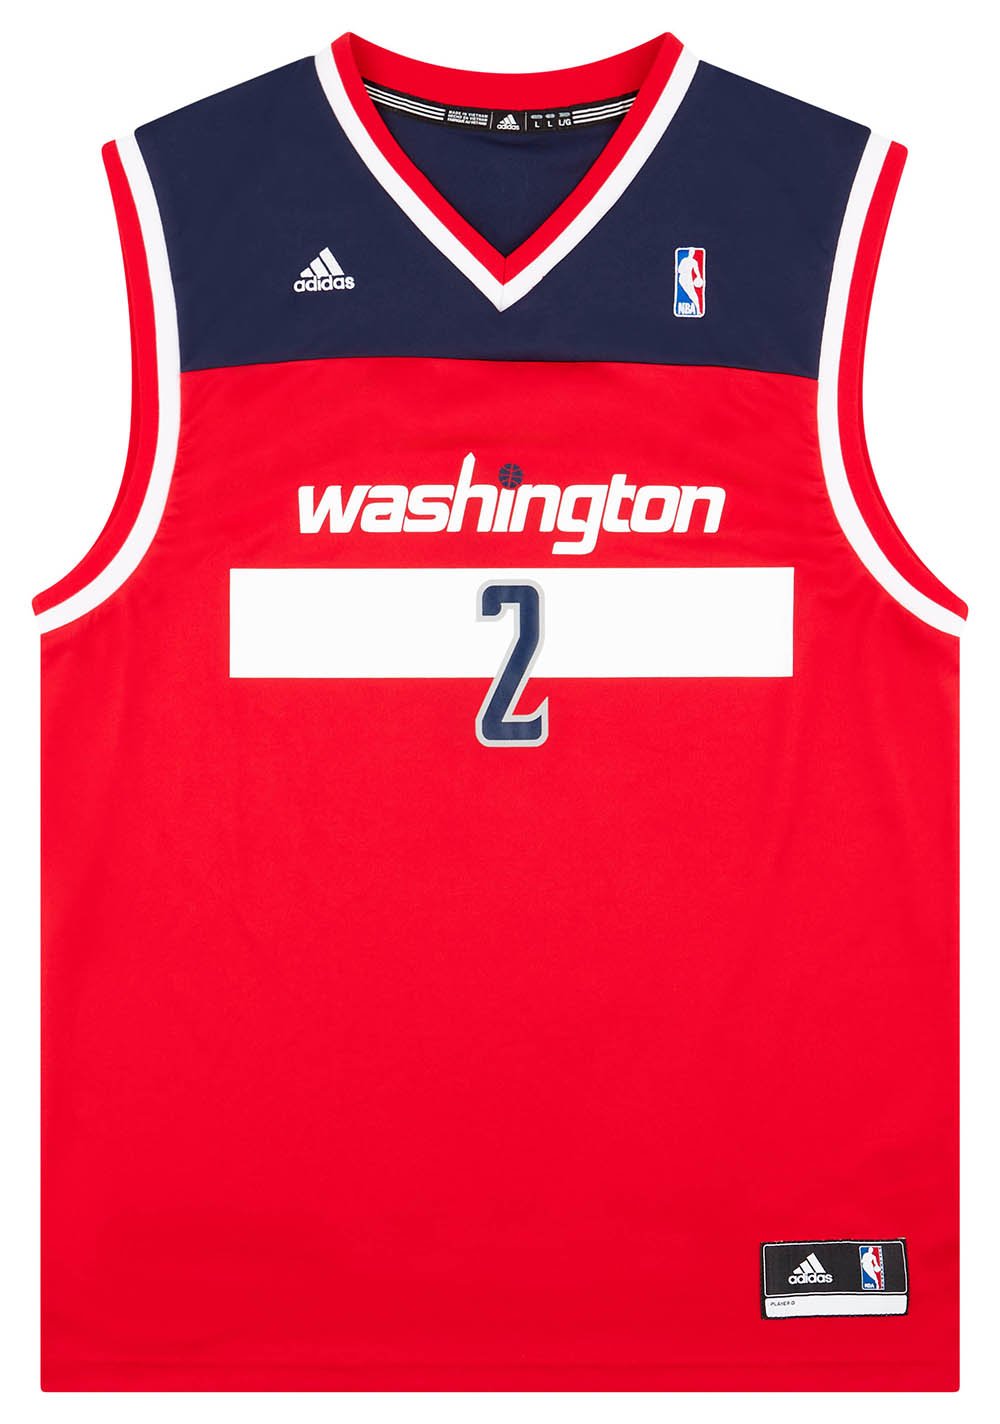 Adidas Mens Size 50 JOHN WALL Wizards NBA Basketball Jersey Stitched